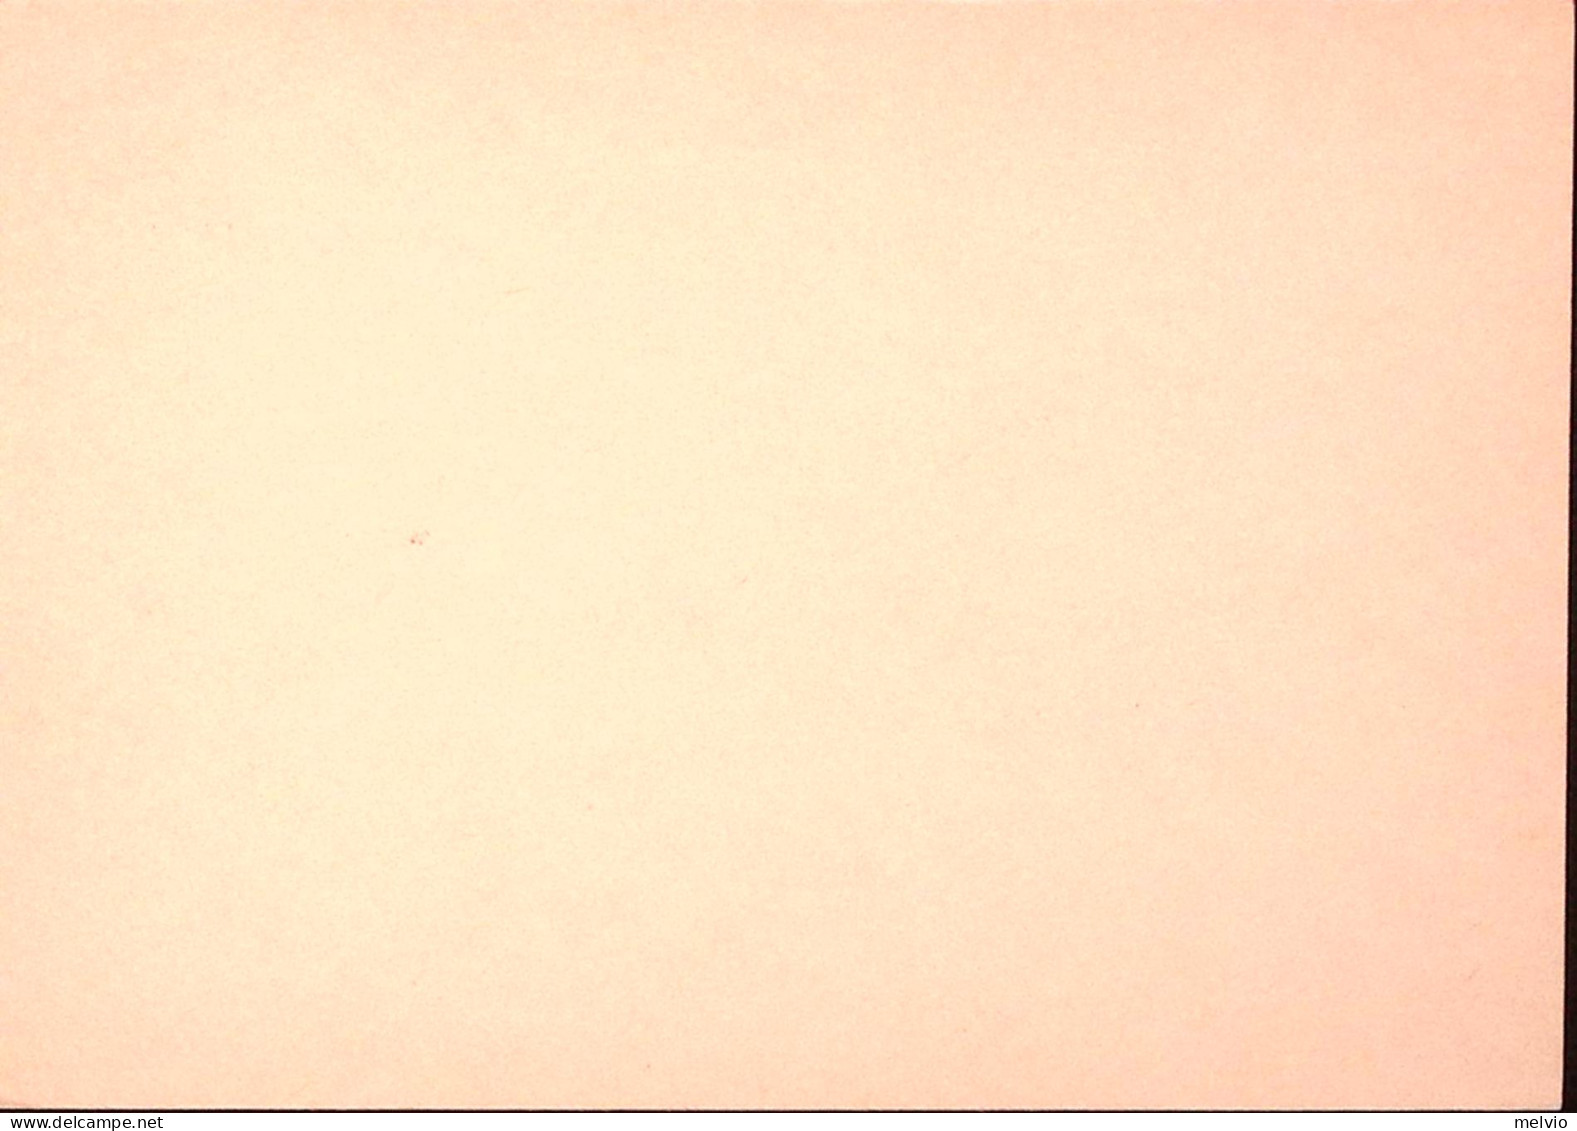 1974-CONGRESSO INTERN. BIOCLIMATOLOGIA/ANCONA Ann Speciale (3.6) Su Cartolina Po - 1971-80: Marcophilie